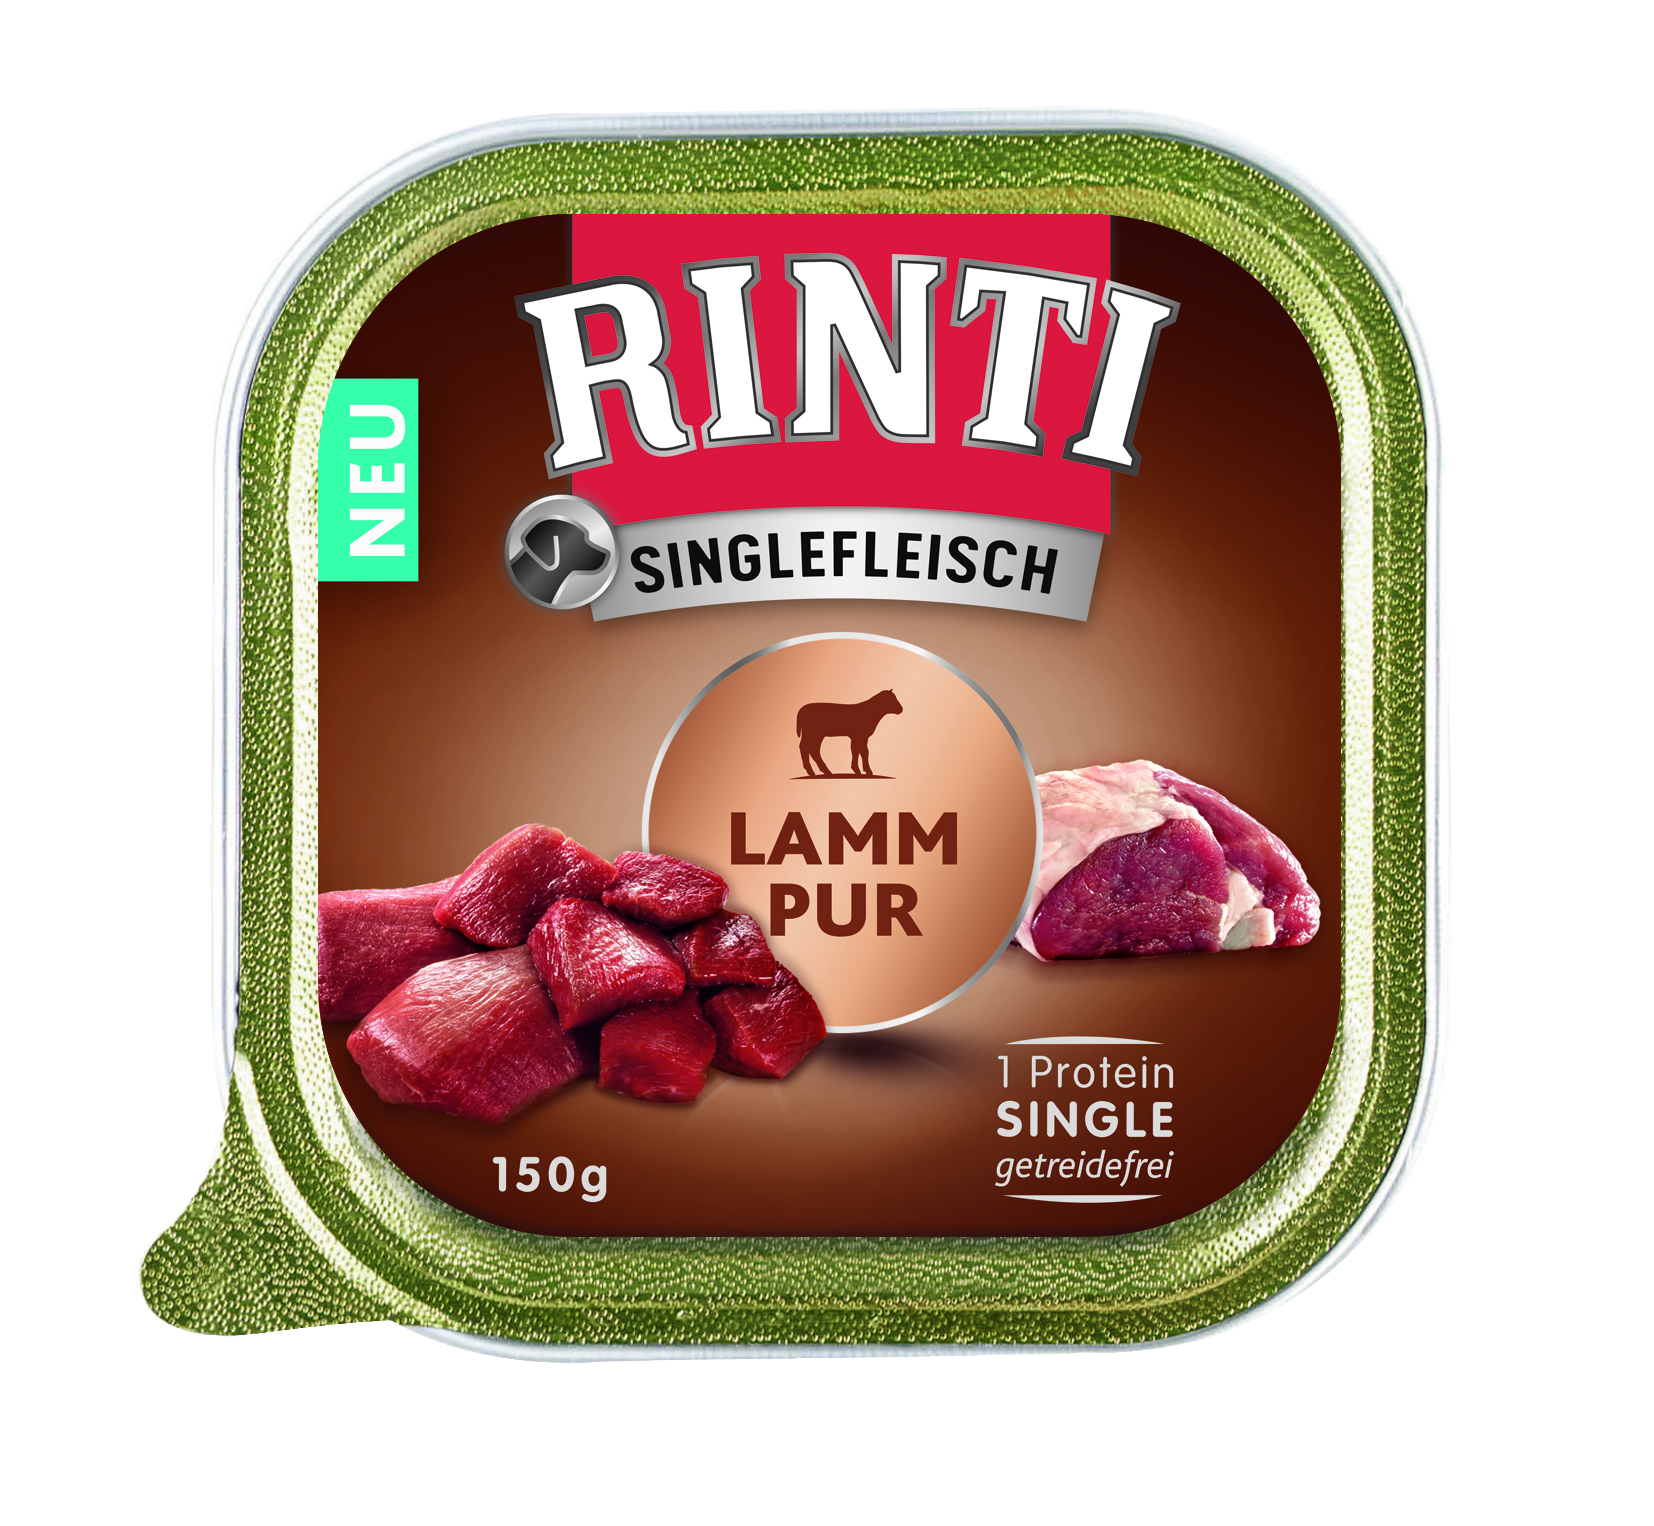 Rinti Singlefleisch Lamm Pur 150g Schale